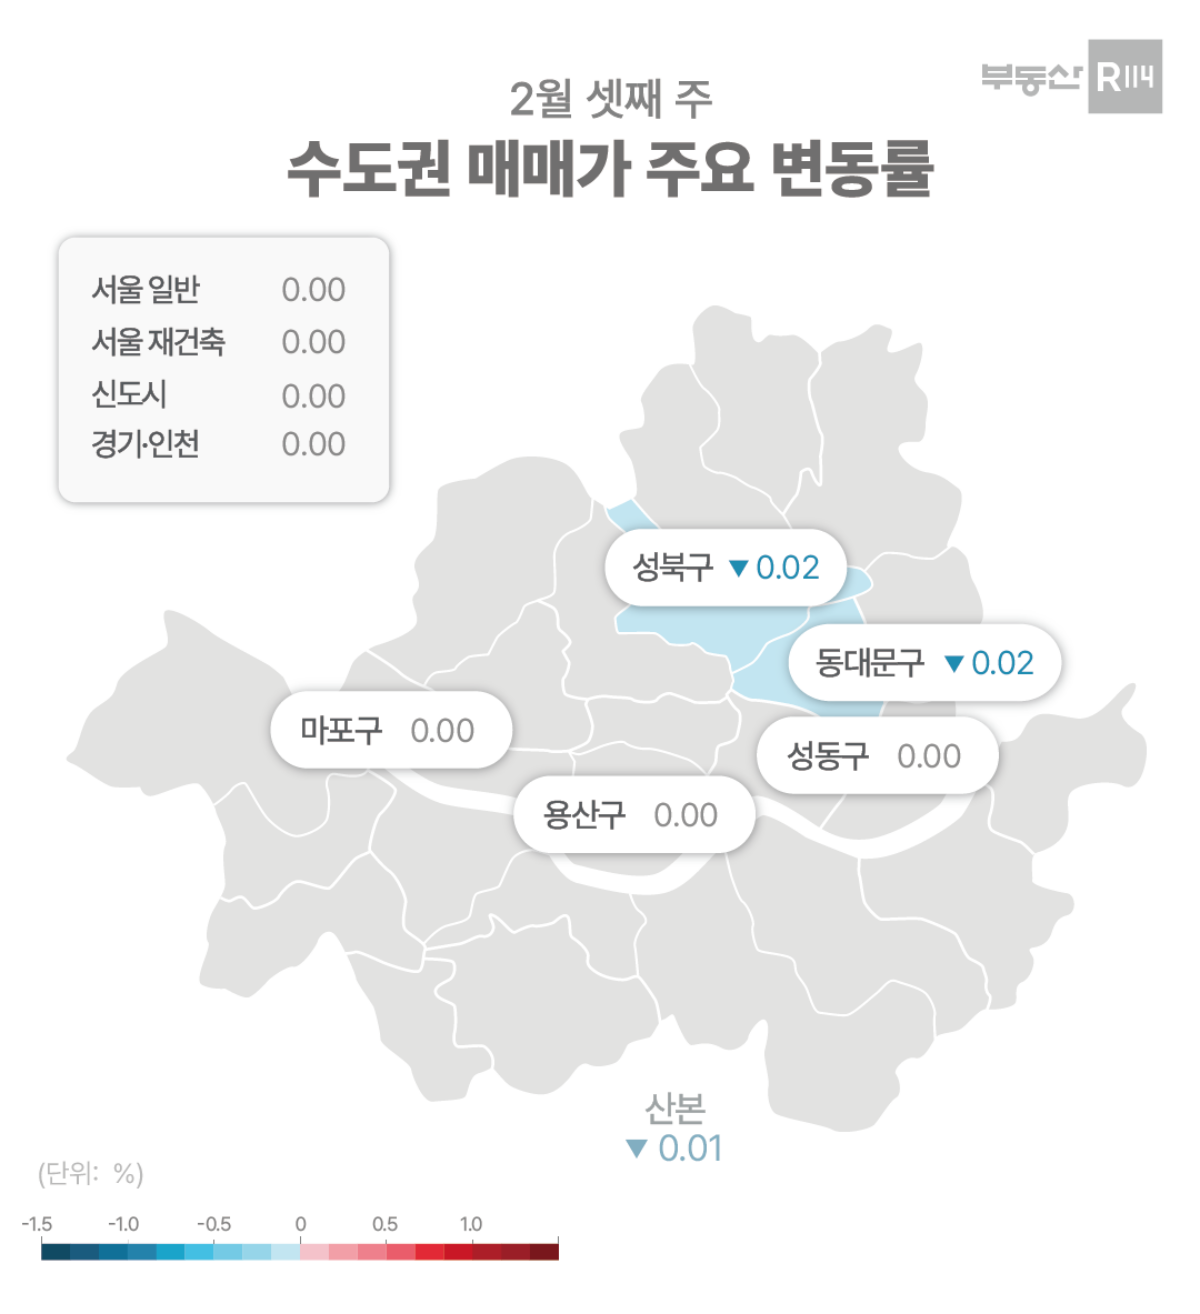 부동산R114가 23일 발표한 '2월 3주차 수도권 아파트 매매 가격 시황'. 제공=부동산R114